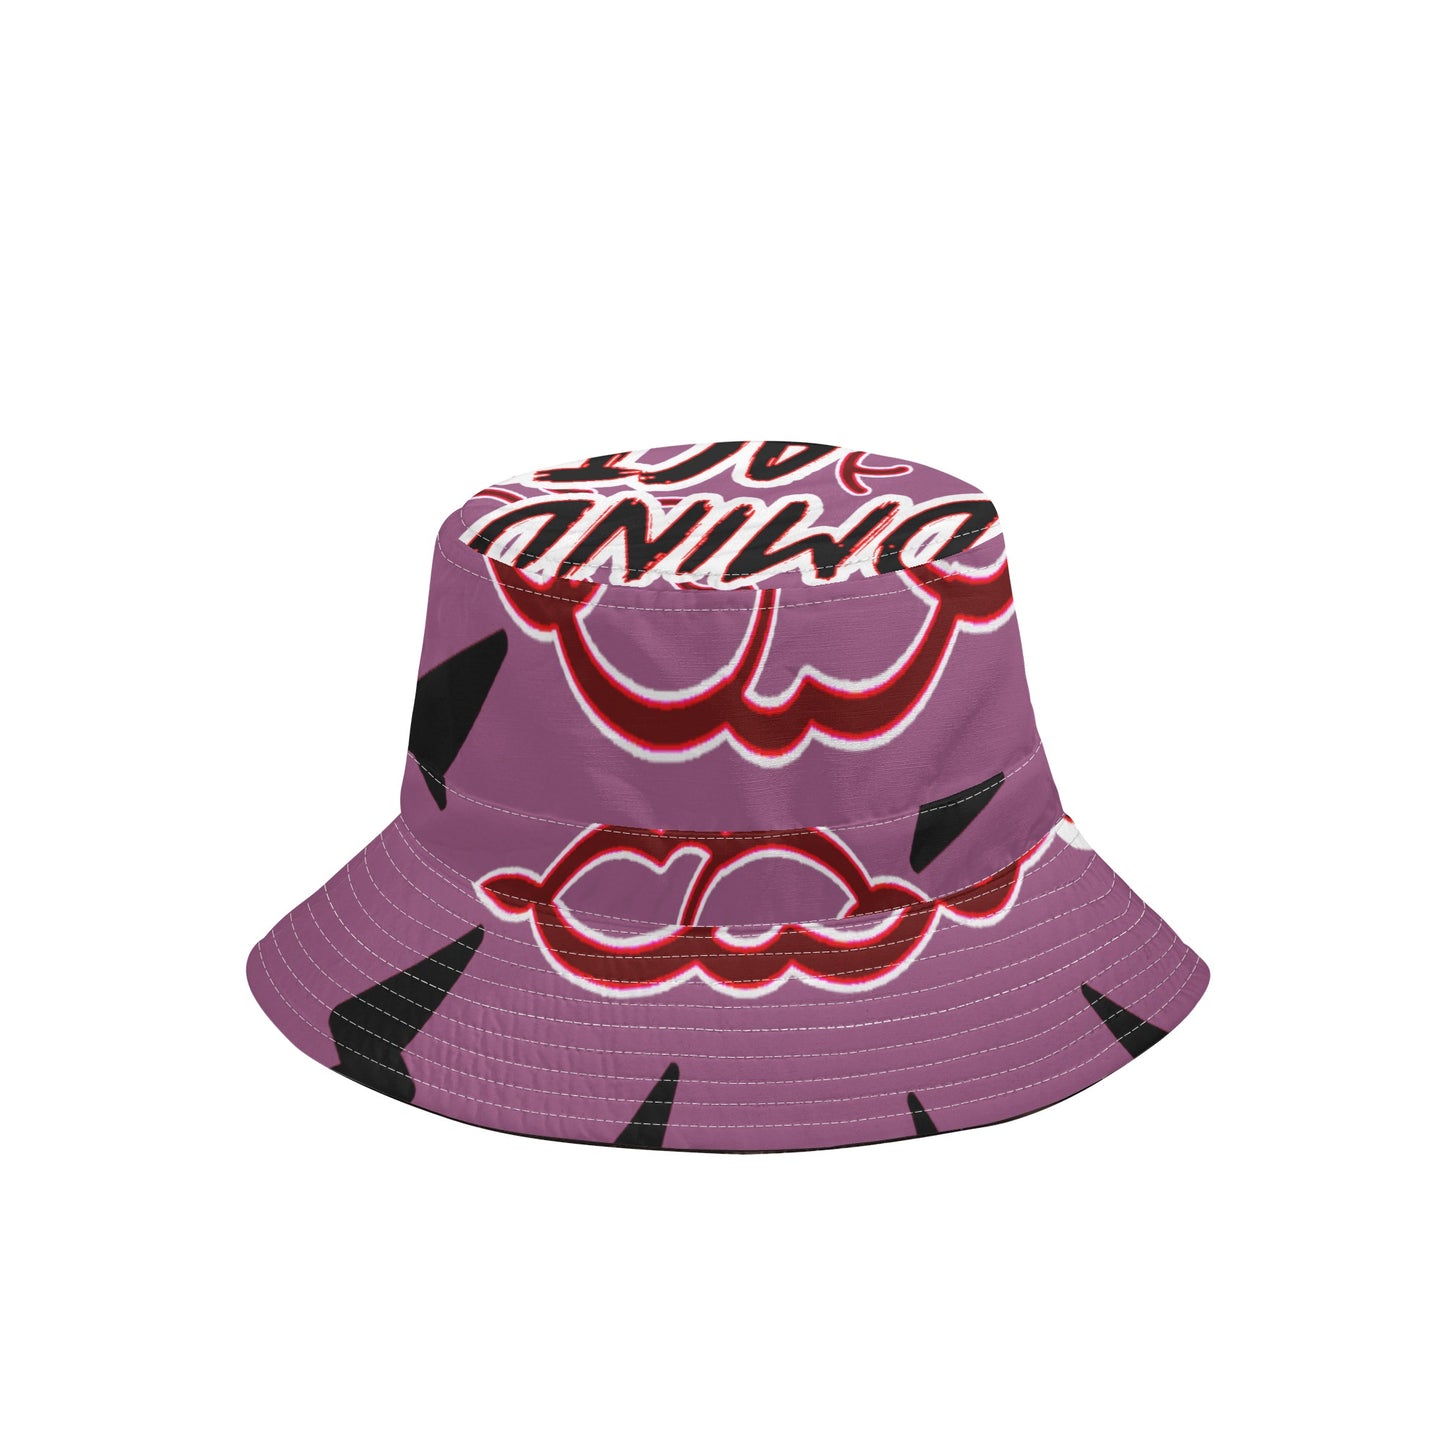 Καπέλο κουβά Unisex FZ